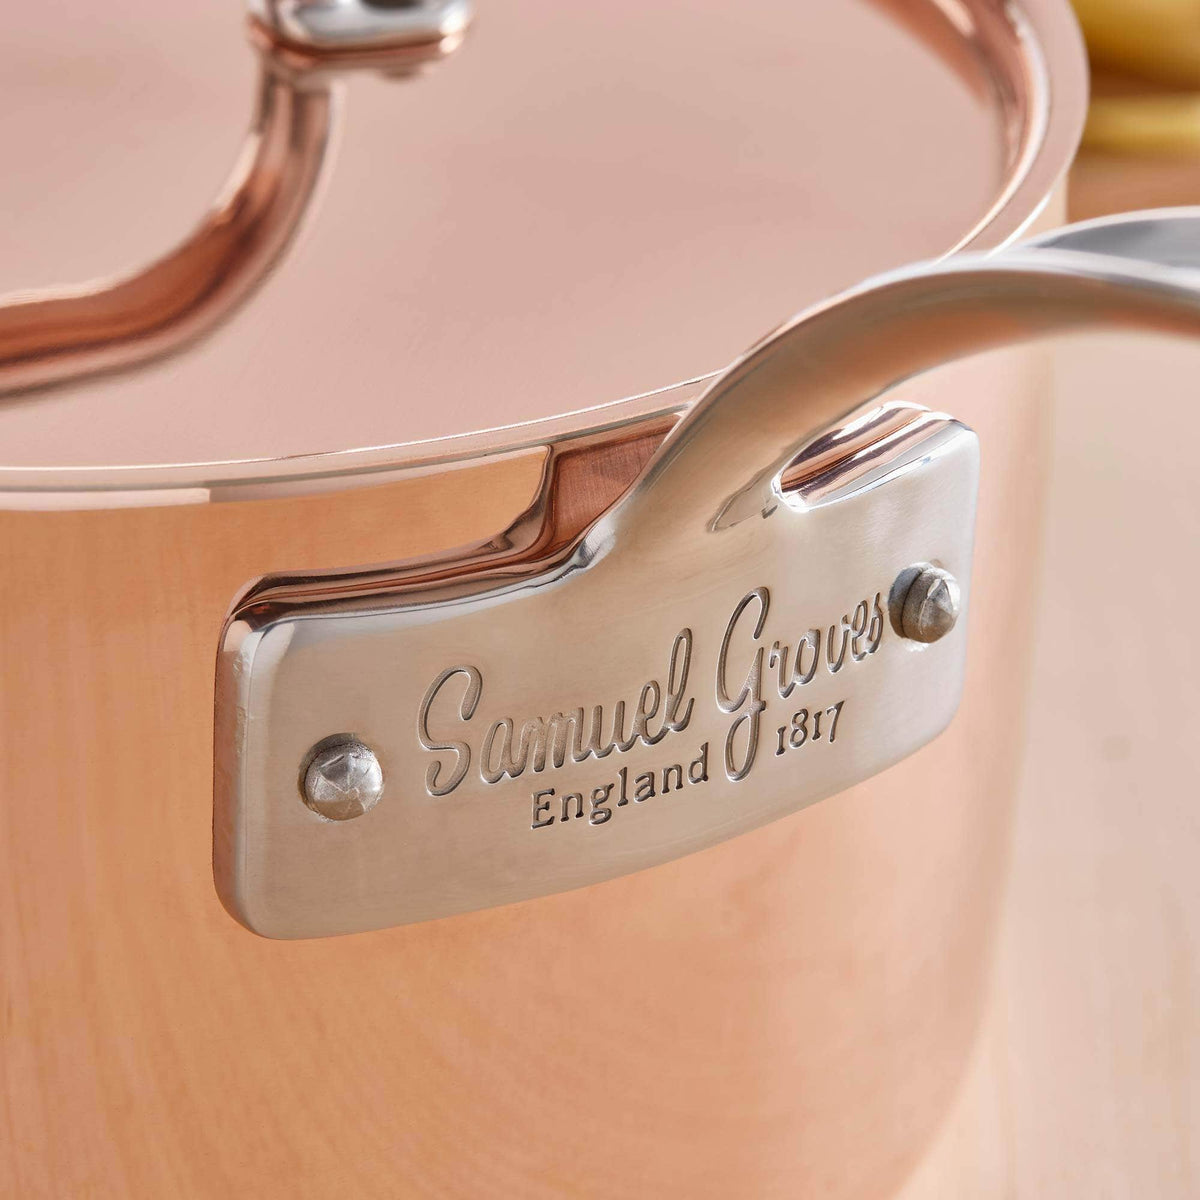 *Not Quite Perfect* 20 cm Copper saucepan &amp; lid